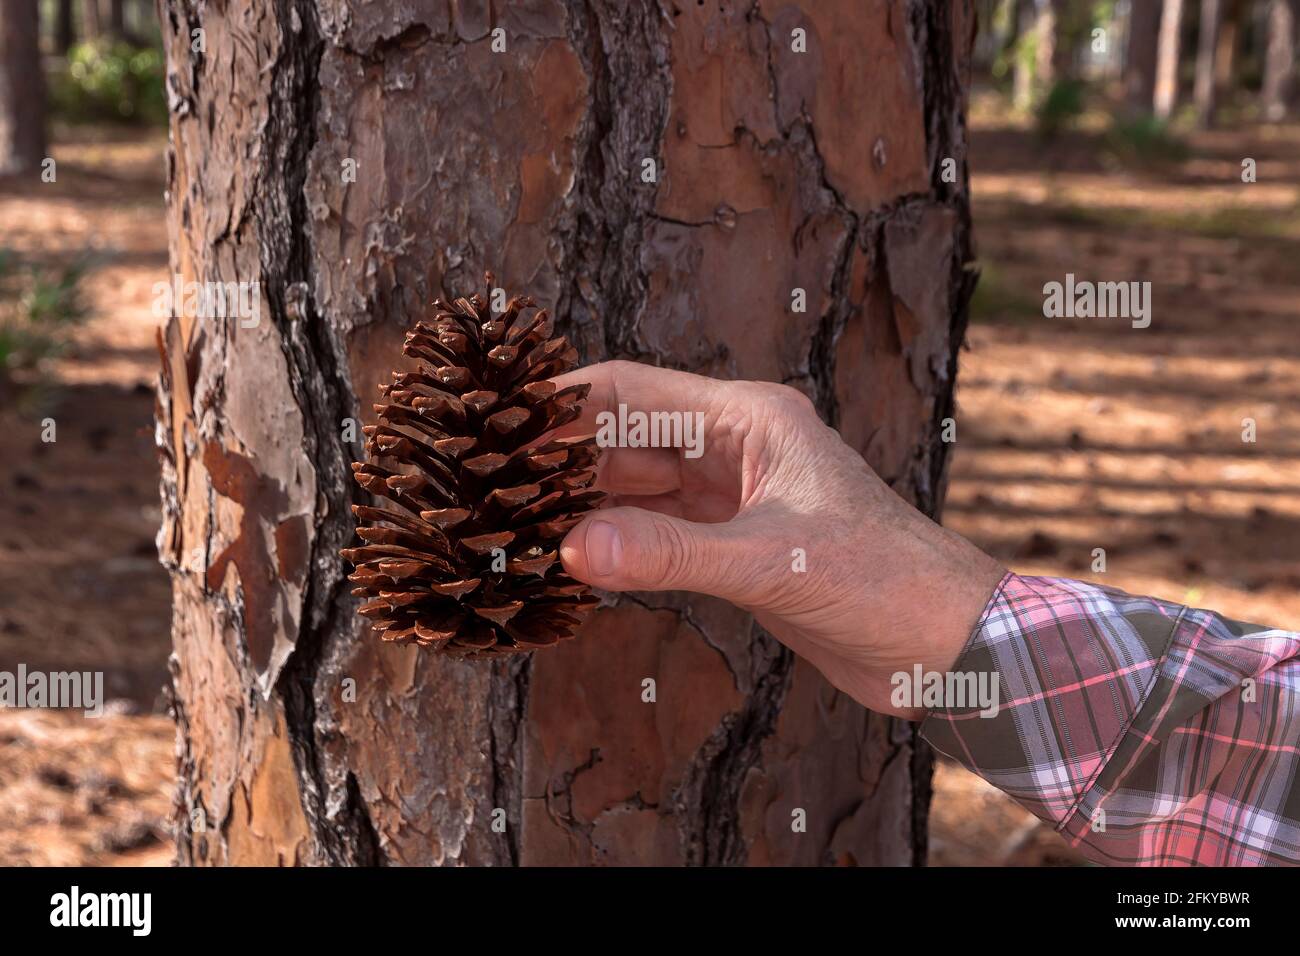 Mano che tiene un cono sud della Florida/Southern Slash Pine di fronte alla corteccia dell'albero. Foto Stock